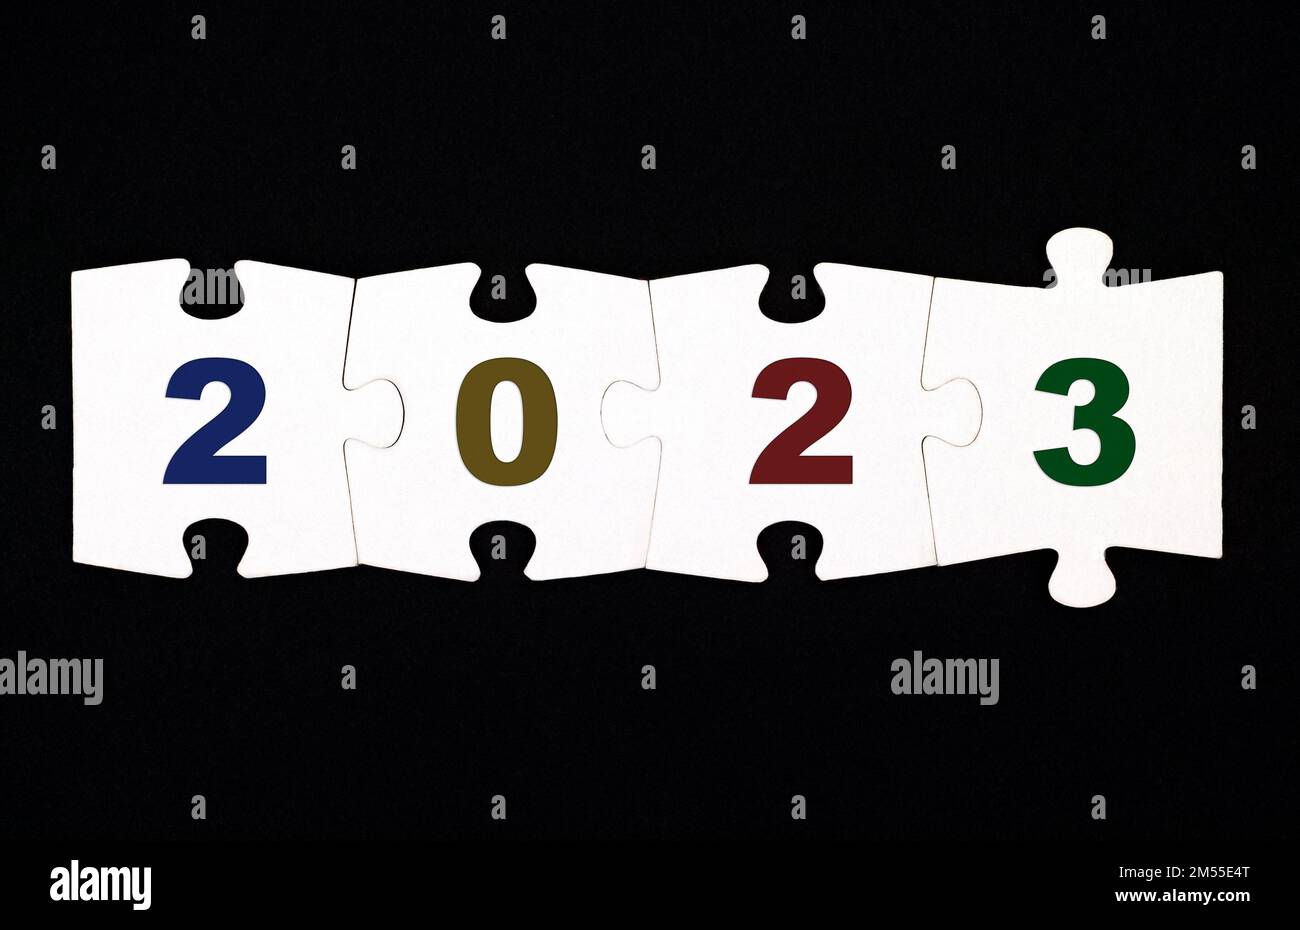 Quattro pezzi di un puzzle con i numeri 20223 sono collegati insieme su uno sfondo nero Foto Stock